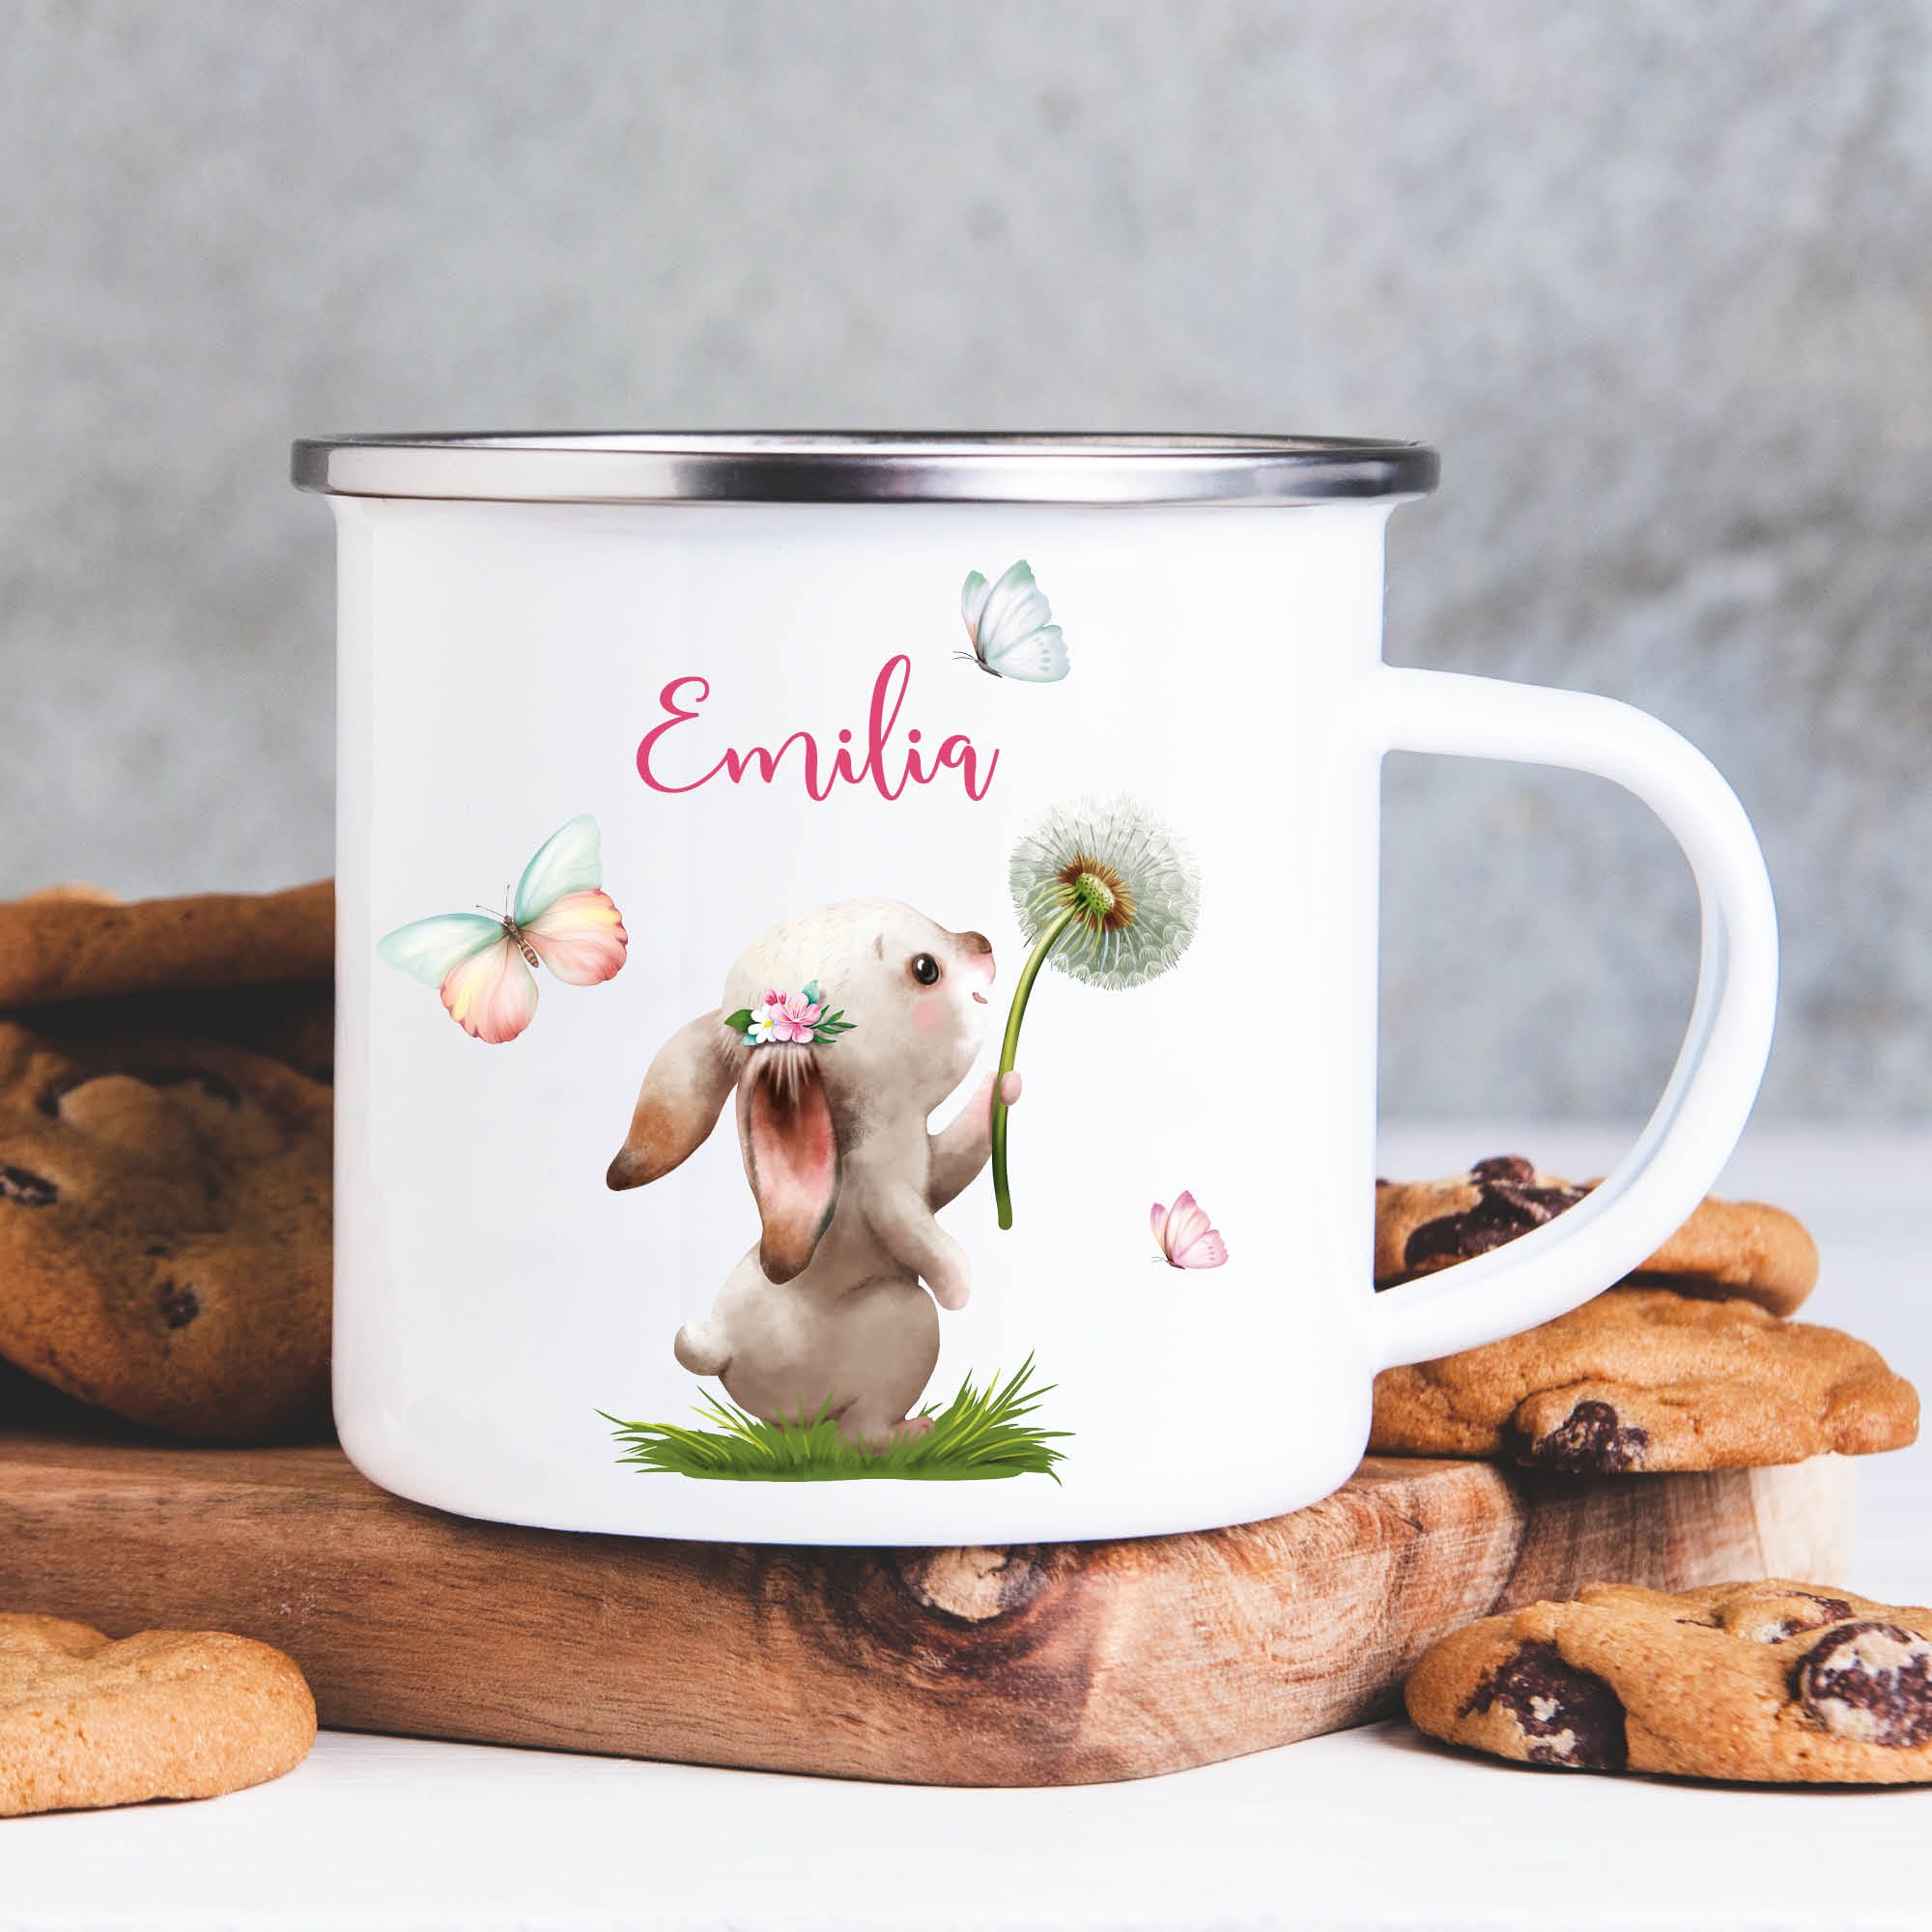 Kindertasse Emaille Campingbecher Hase mit Pusteblume Kaffeebecher personalisiert mit Wunschnamen